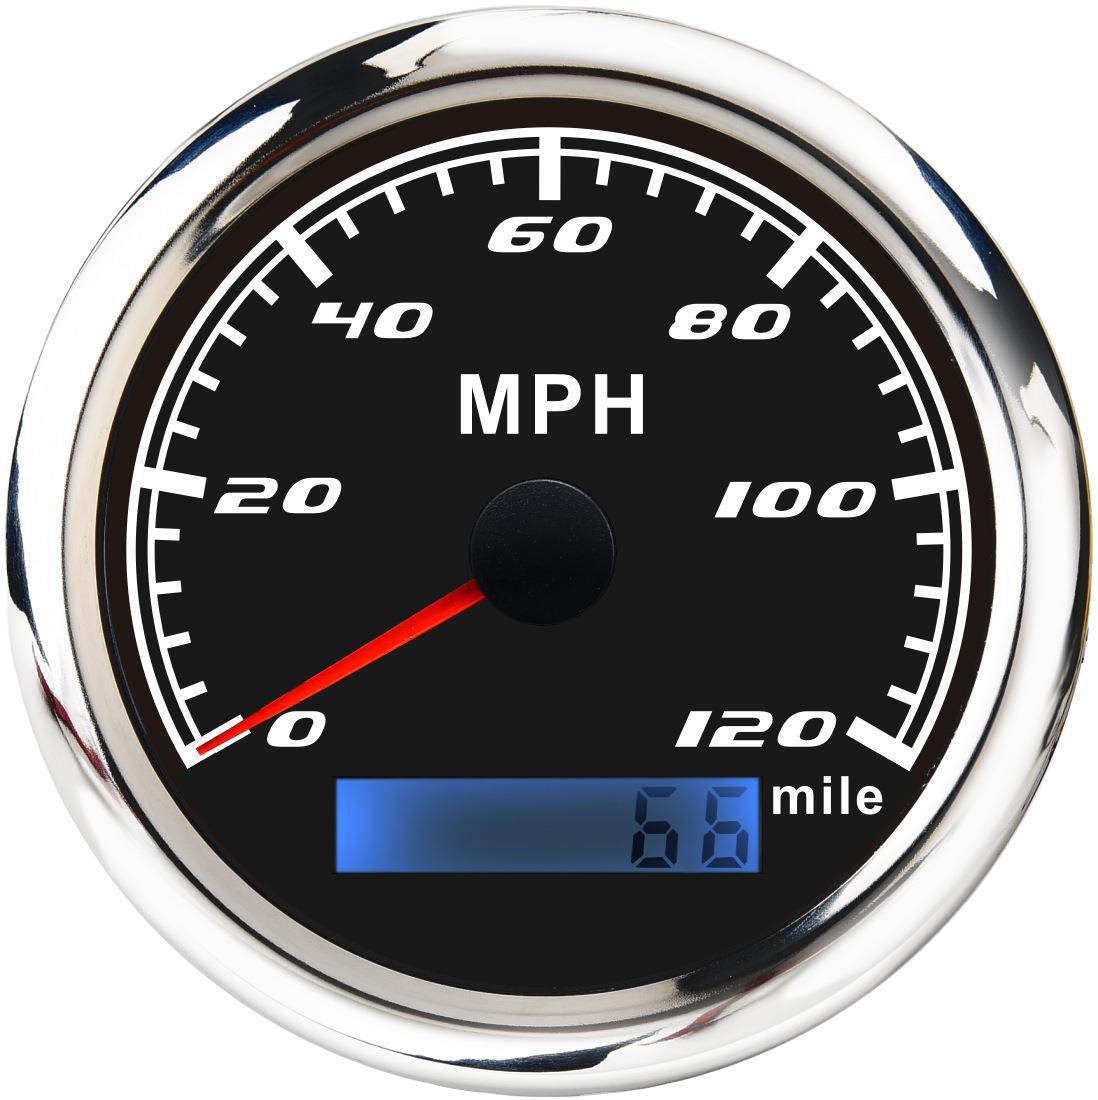 GPS Speedometer waterproof Fog Engineering vehicles special Vehicle motorcycle currency GPS Signal instrument